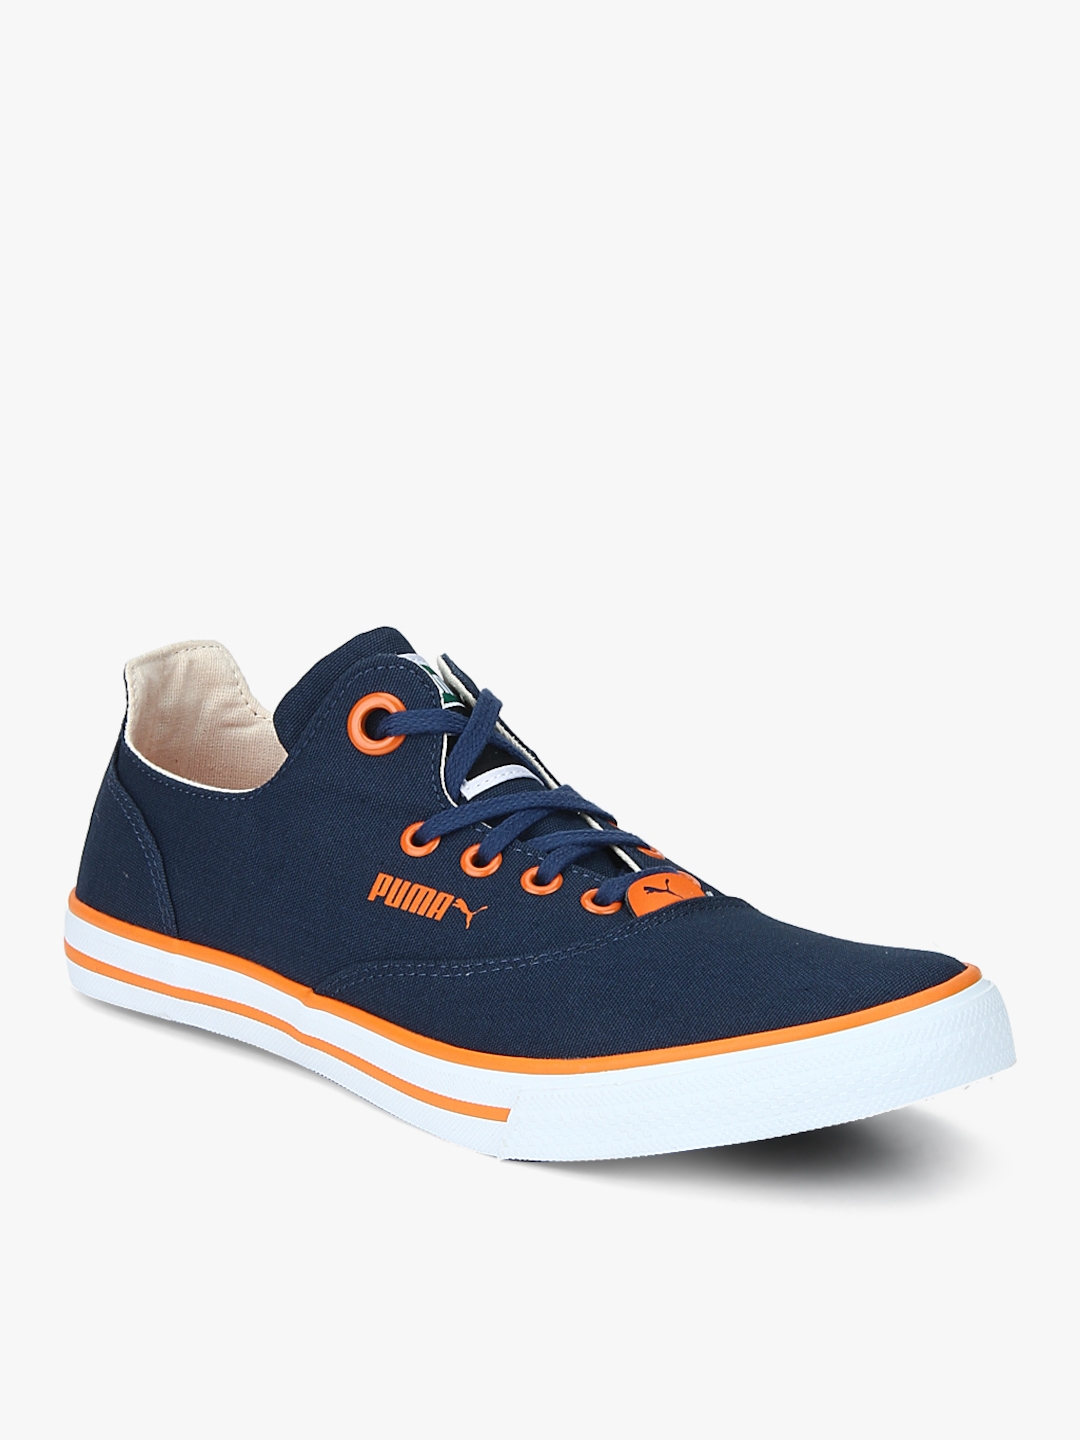 Buy Limnos Cat 3 Dp Navy Blue Sneakers 